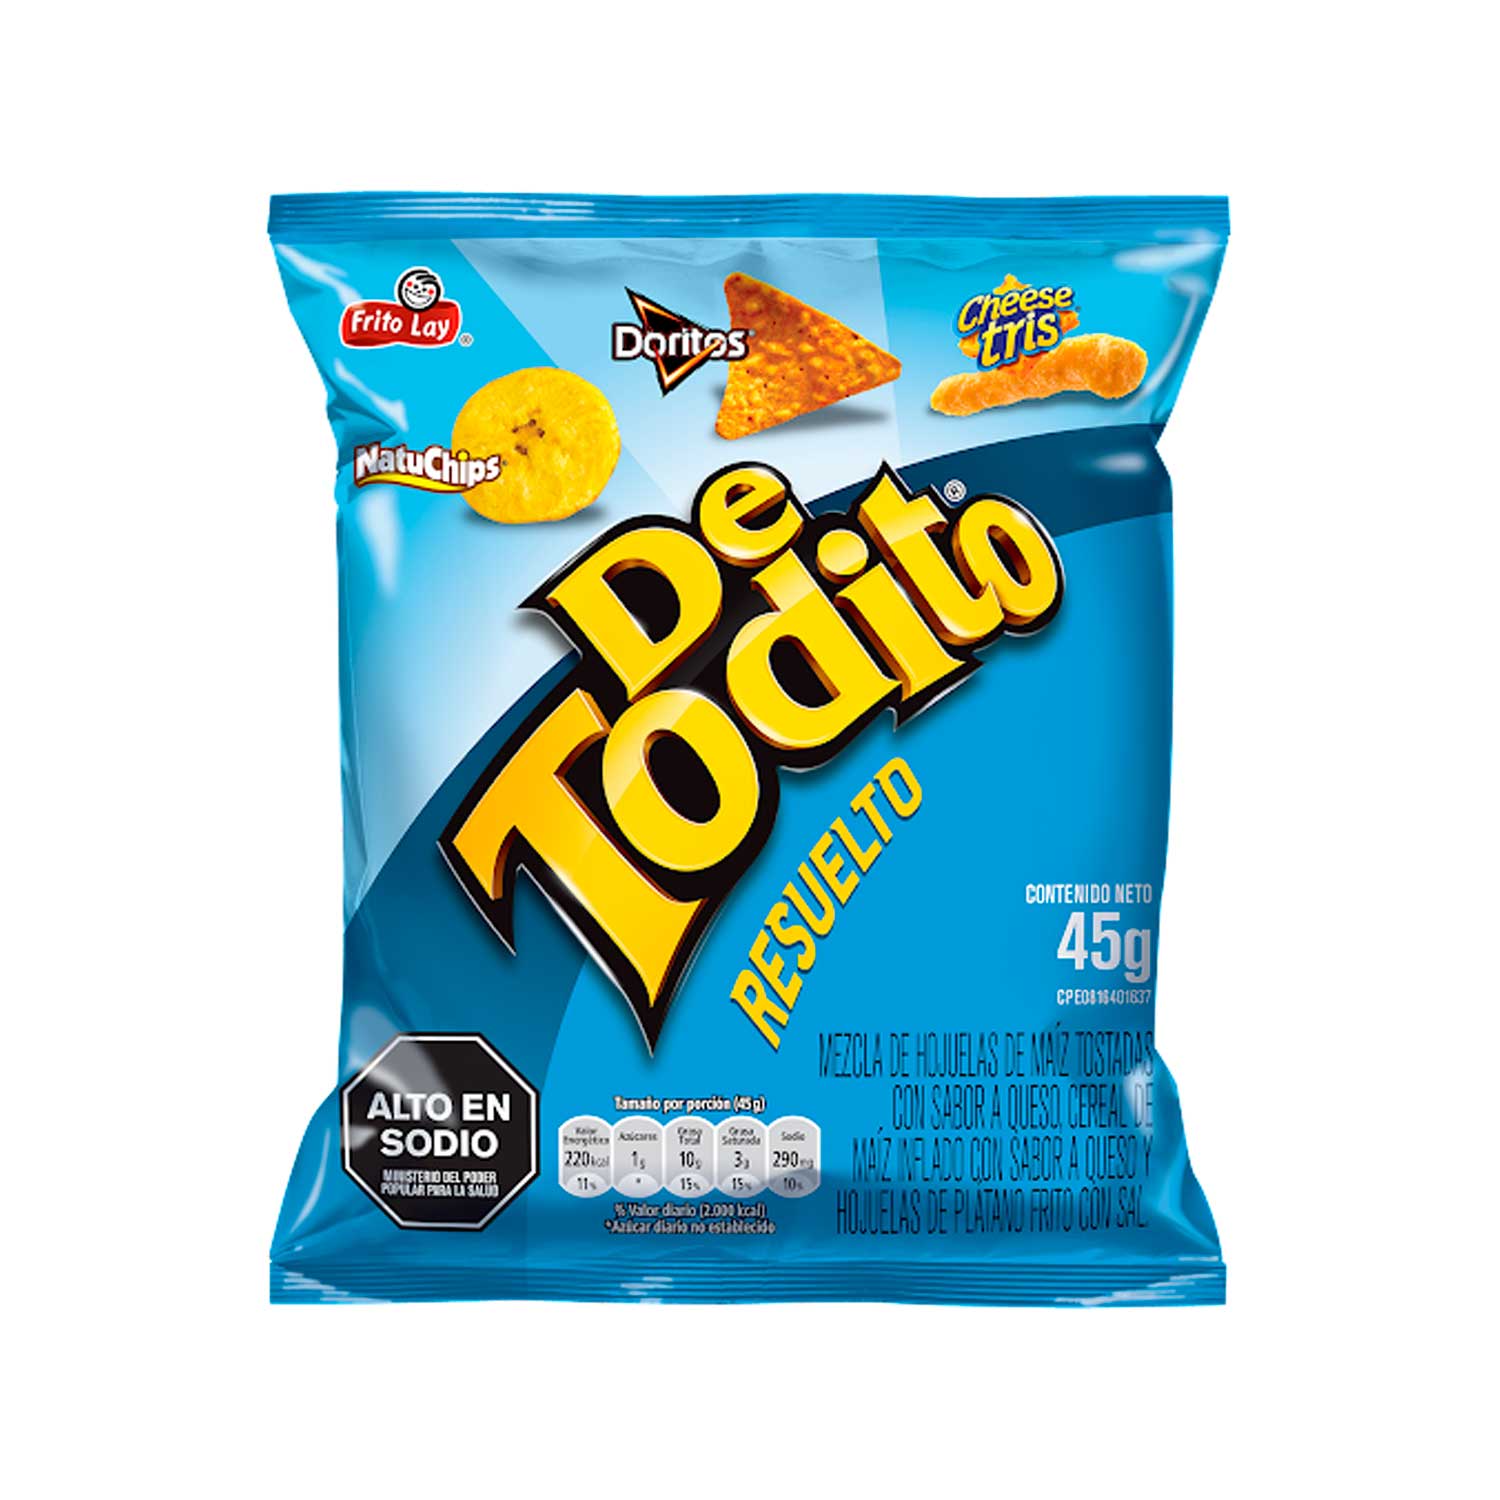 De Todito Resuelto Frito Lay. 45 g